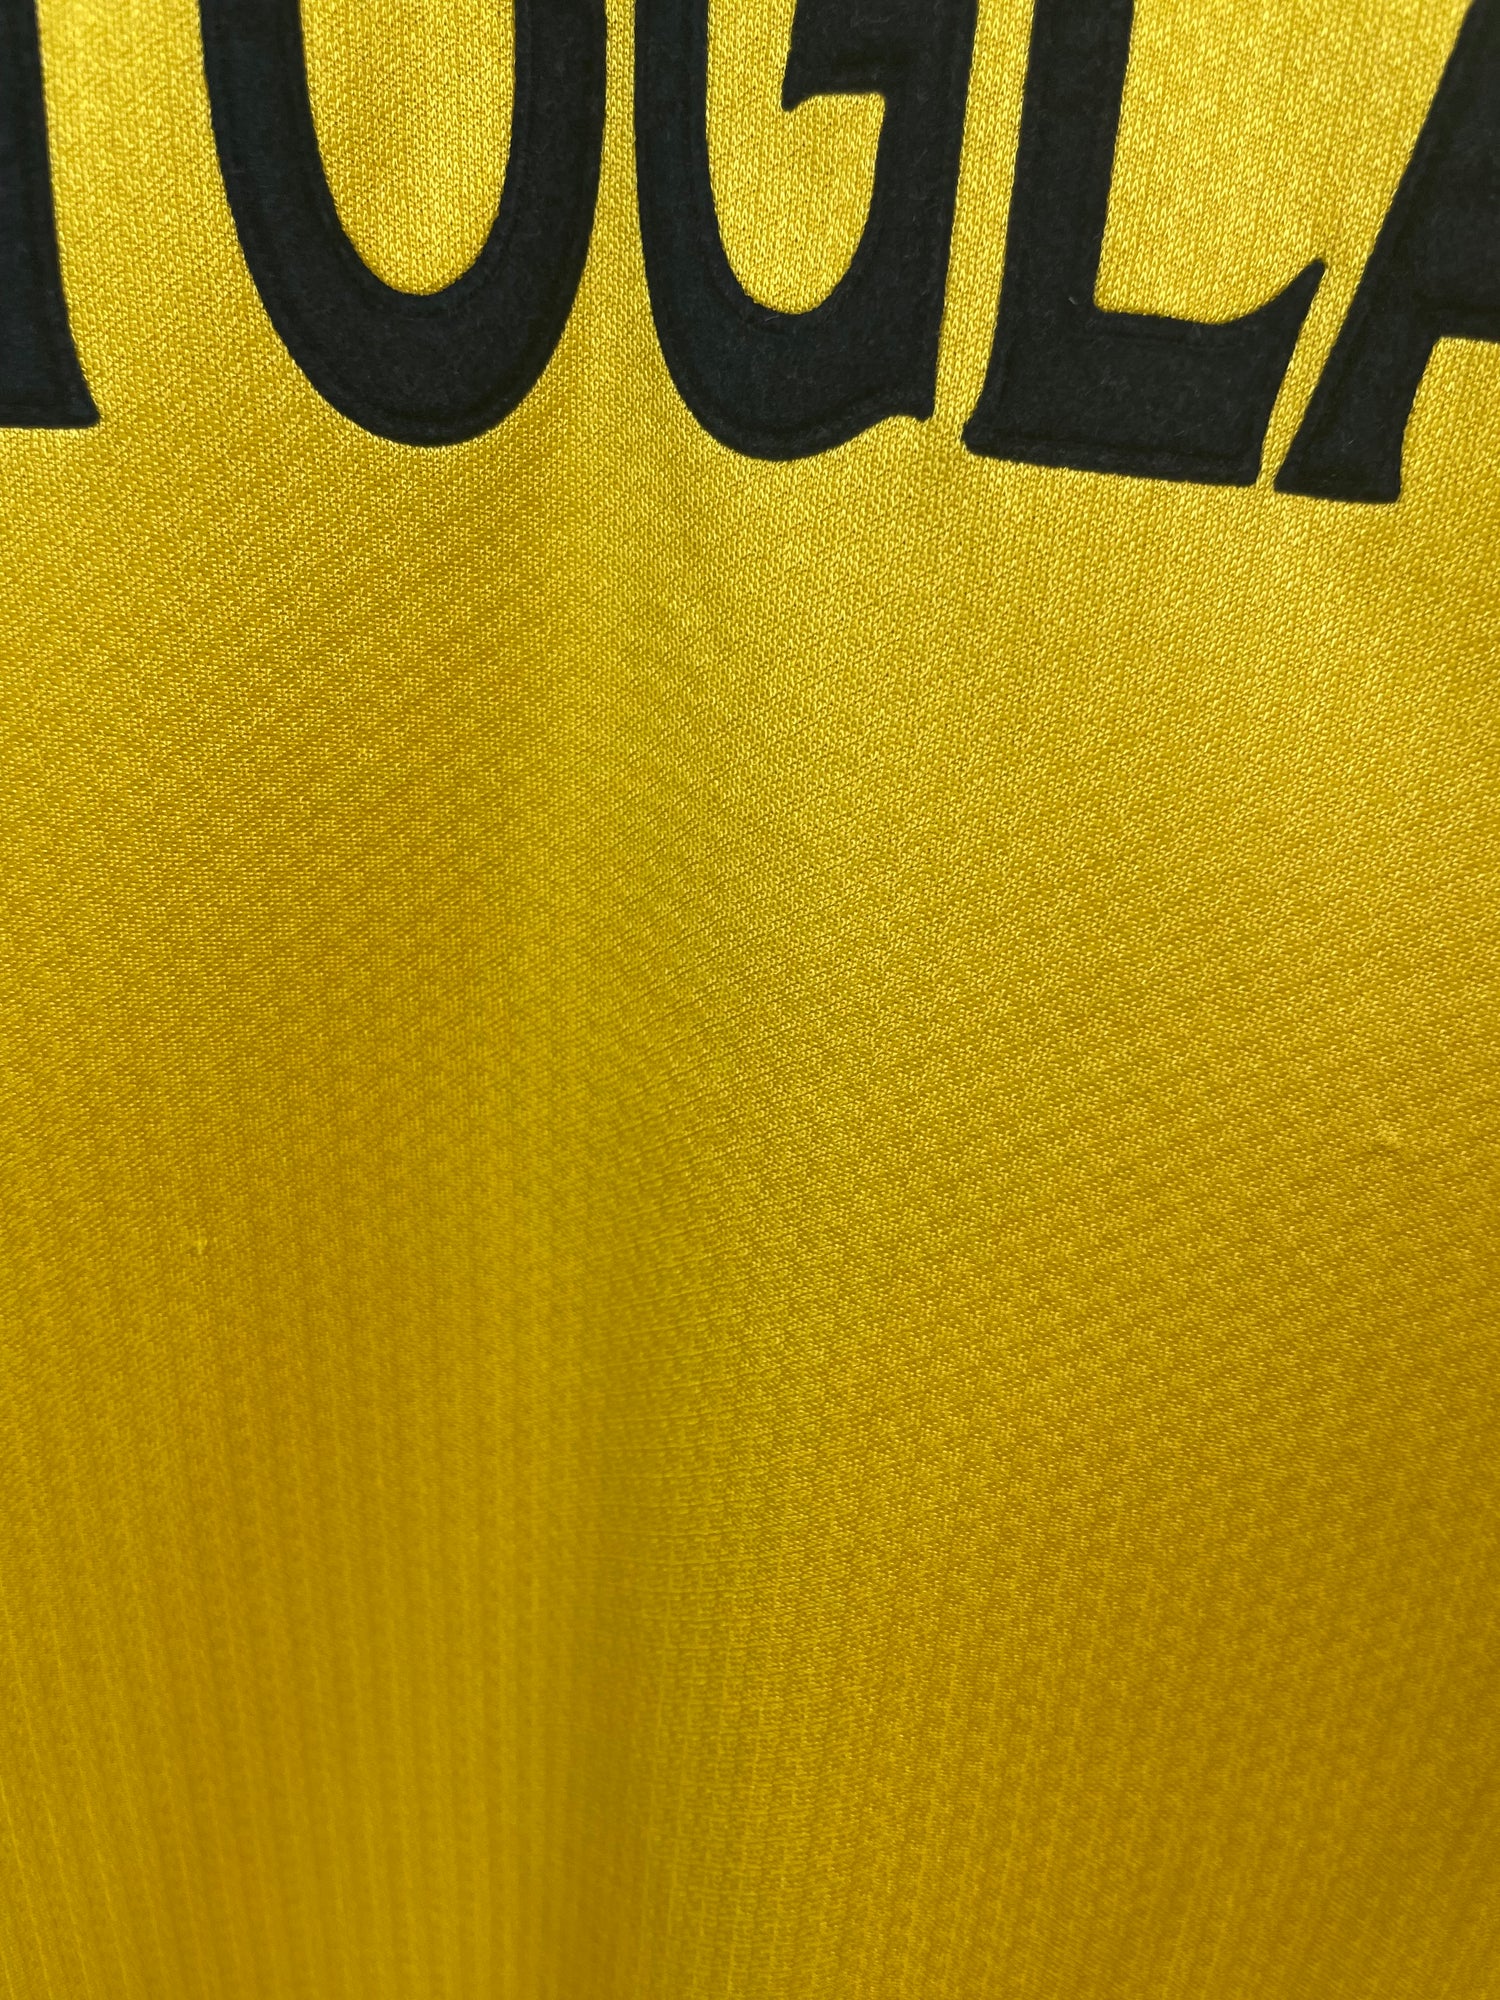 Gianluca Vialli Chelsea 98/99 3. trøje - L